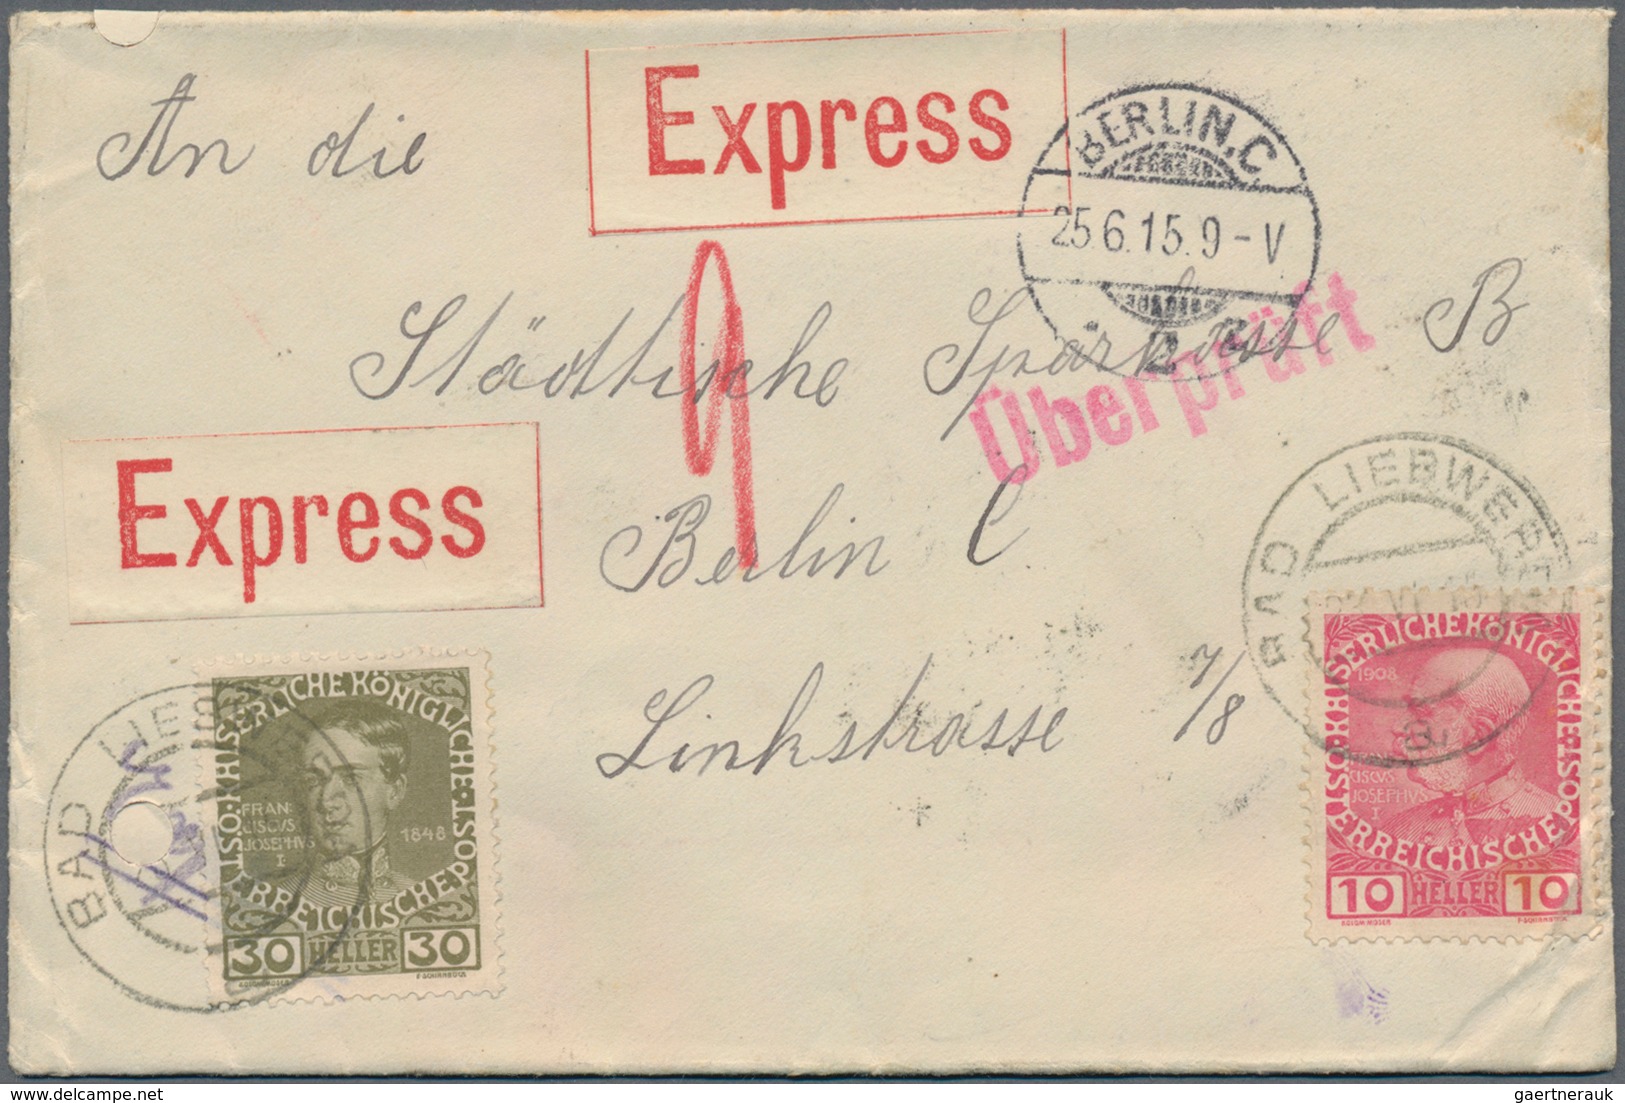 Österreich: 1867/2000 Bestand von ca. 740 Briefen, Dienstbriefen, Karten (teilweise mit Werbung), An